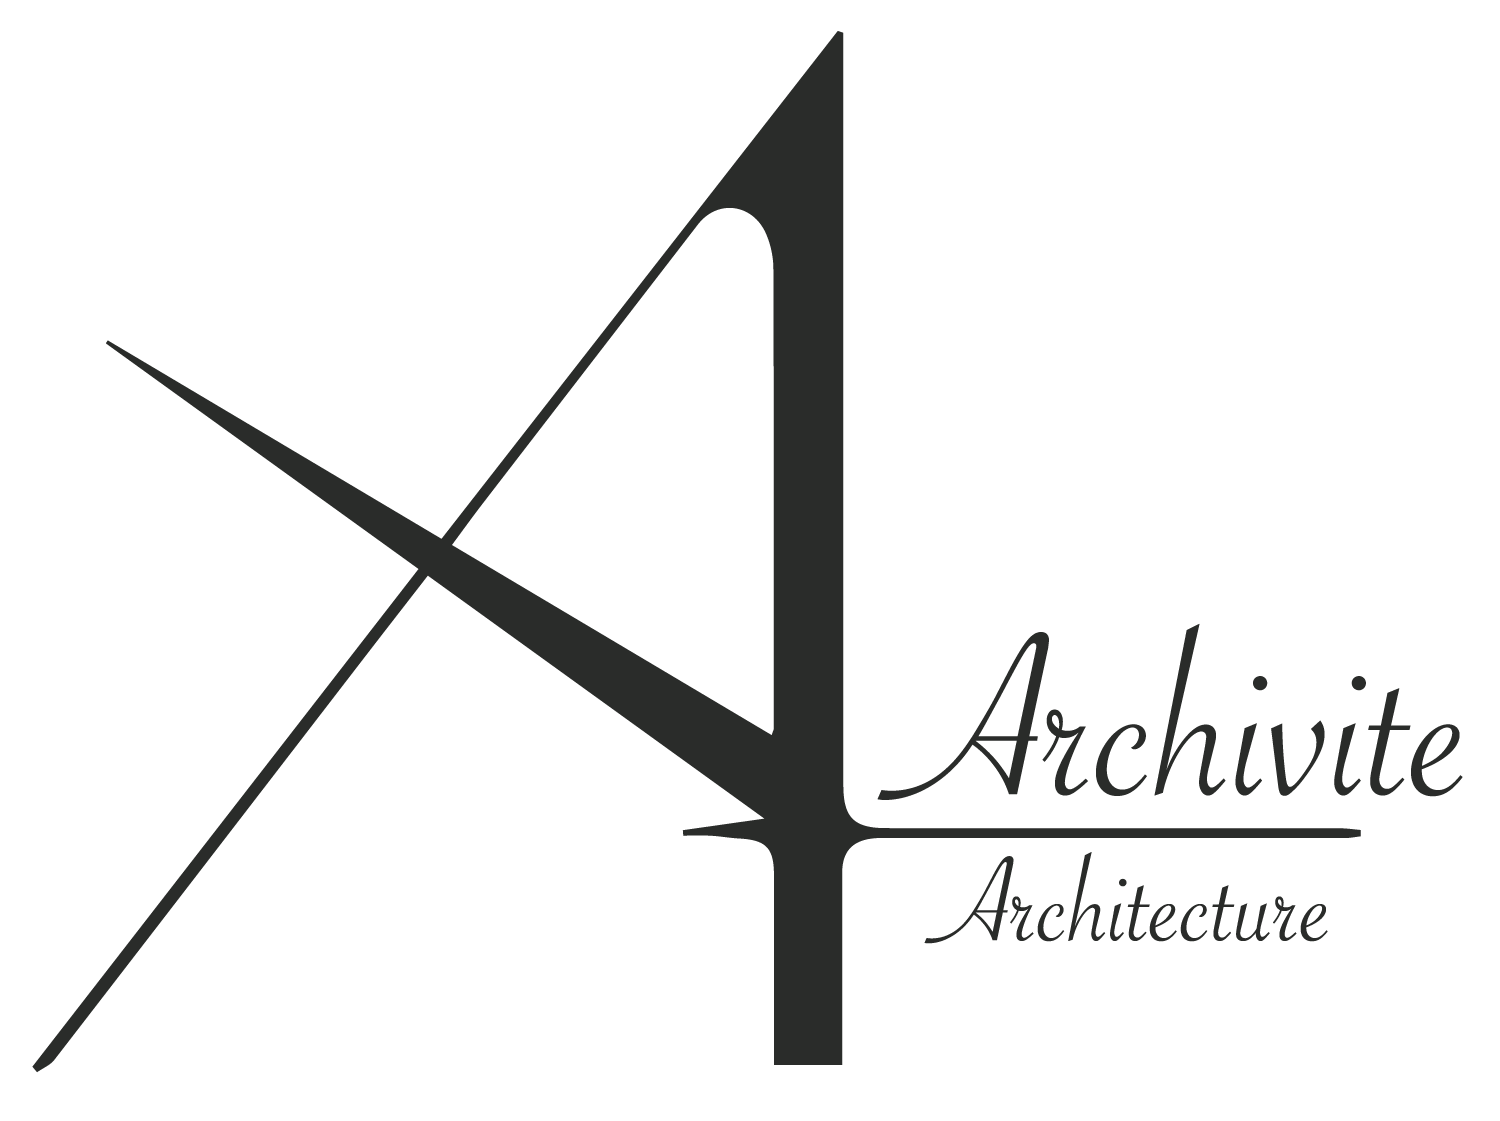 Archivite Architecture